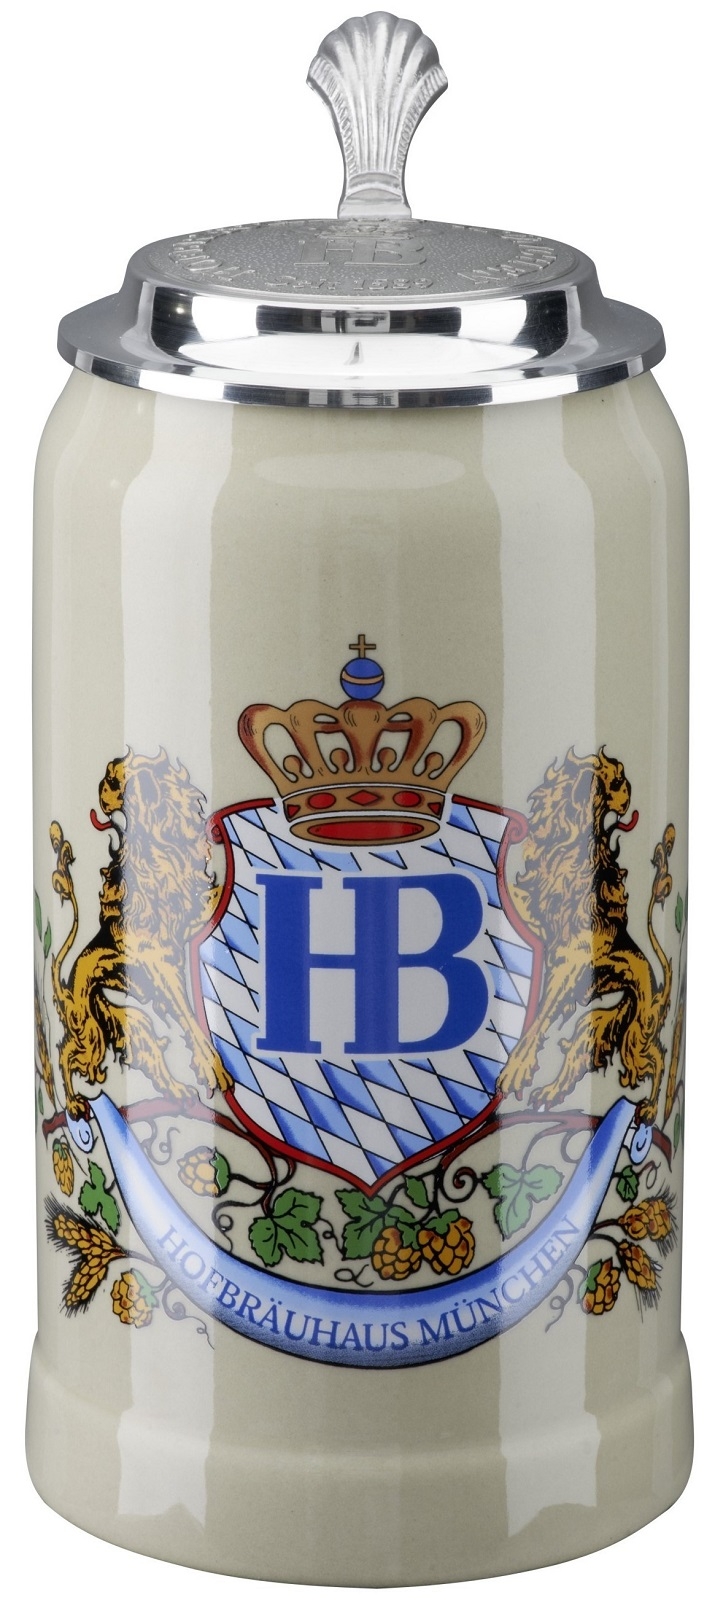 Hofbrauhaus Munich Munchen Lion Crest Stoneware German Beer Stein 1 L